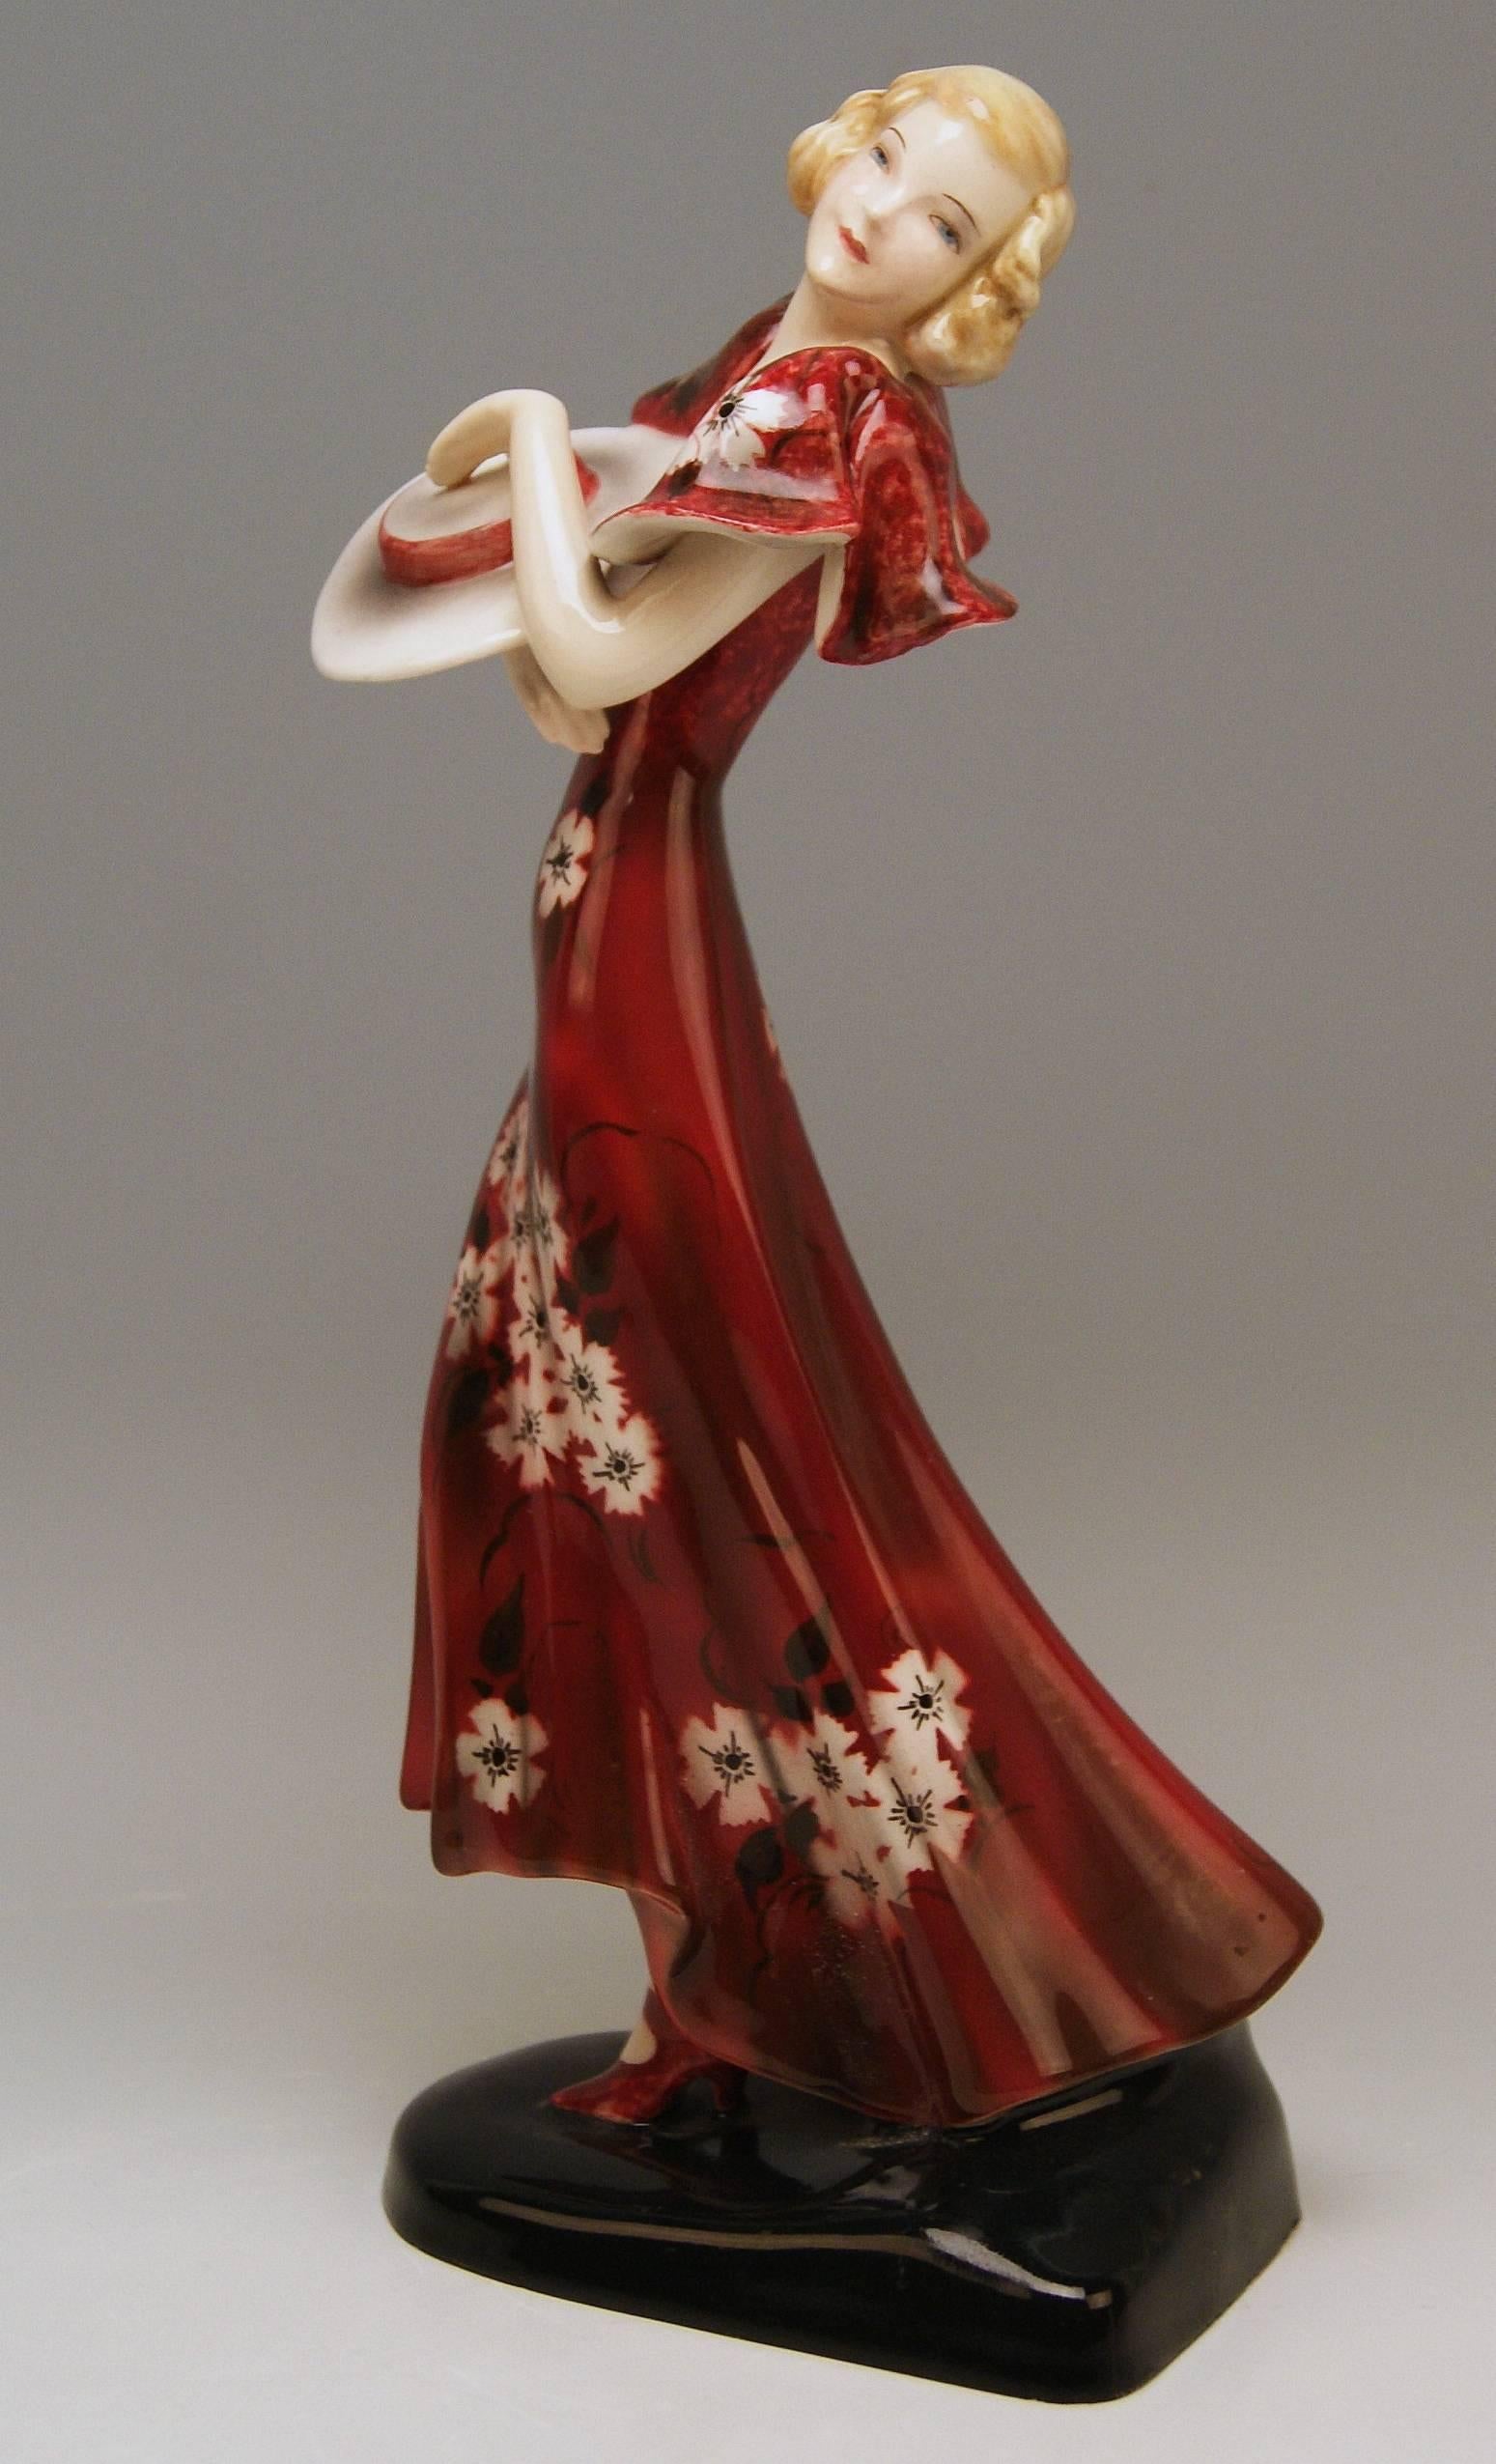 Goldscheider Vienna stunning Art Deco figurine: Lady with hat clad in red dress

Designed by Stefan (= Stephen) Dakon (1904-1992)
modelled circa 1934 made circa 1935 
model number 6940 / 266 / 14

Hallmarked:
Goldscheider WIEN (= VIENNA) stamp